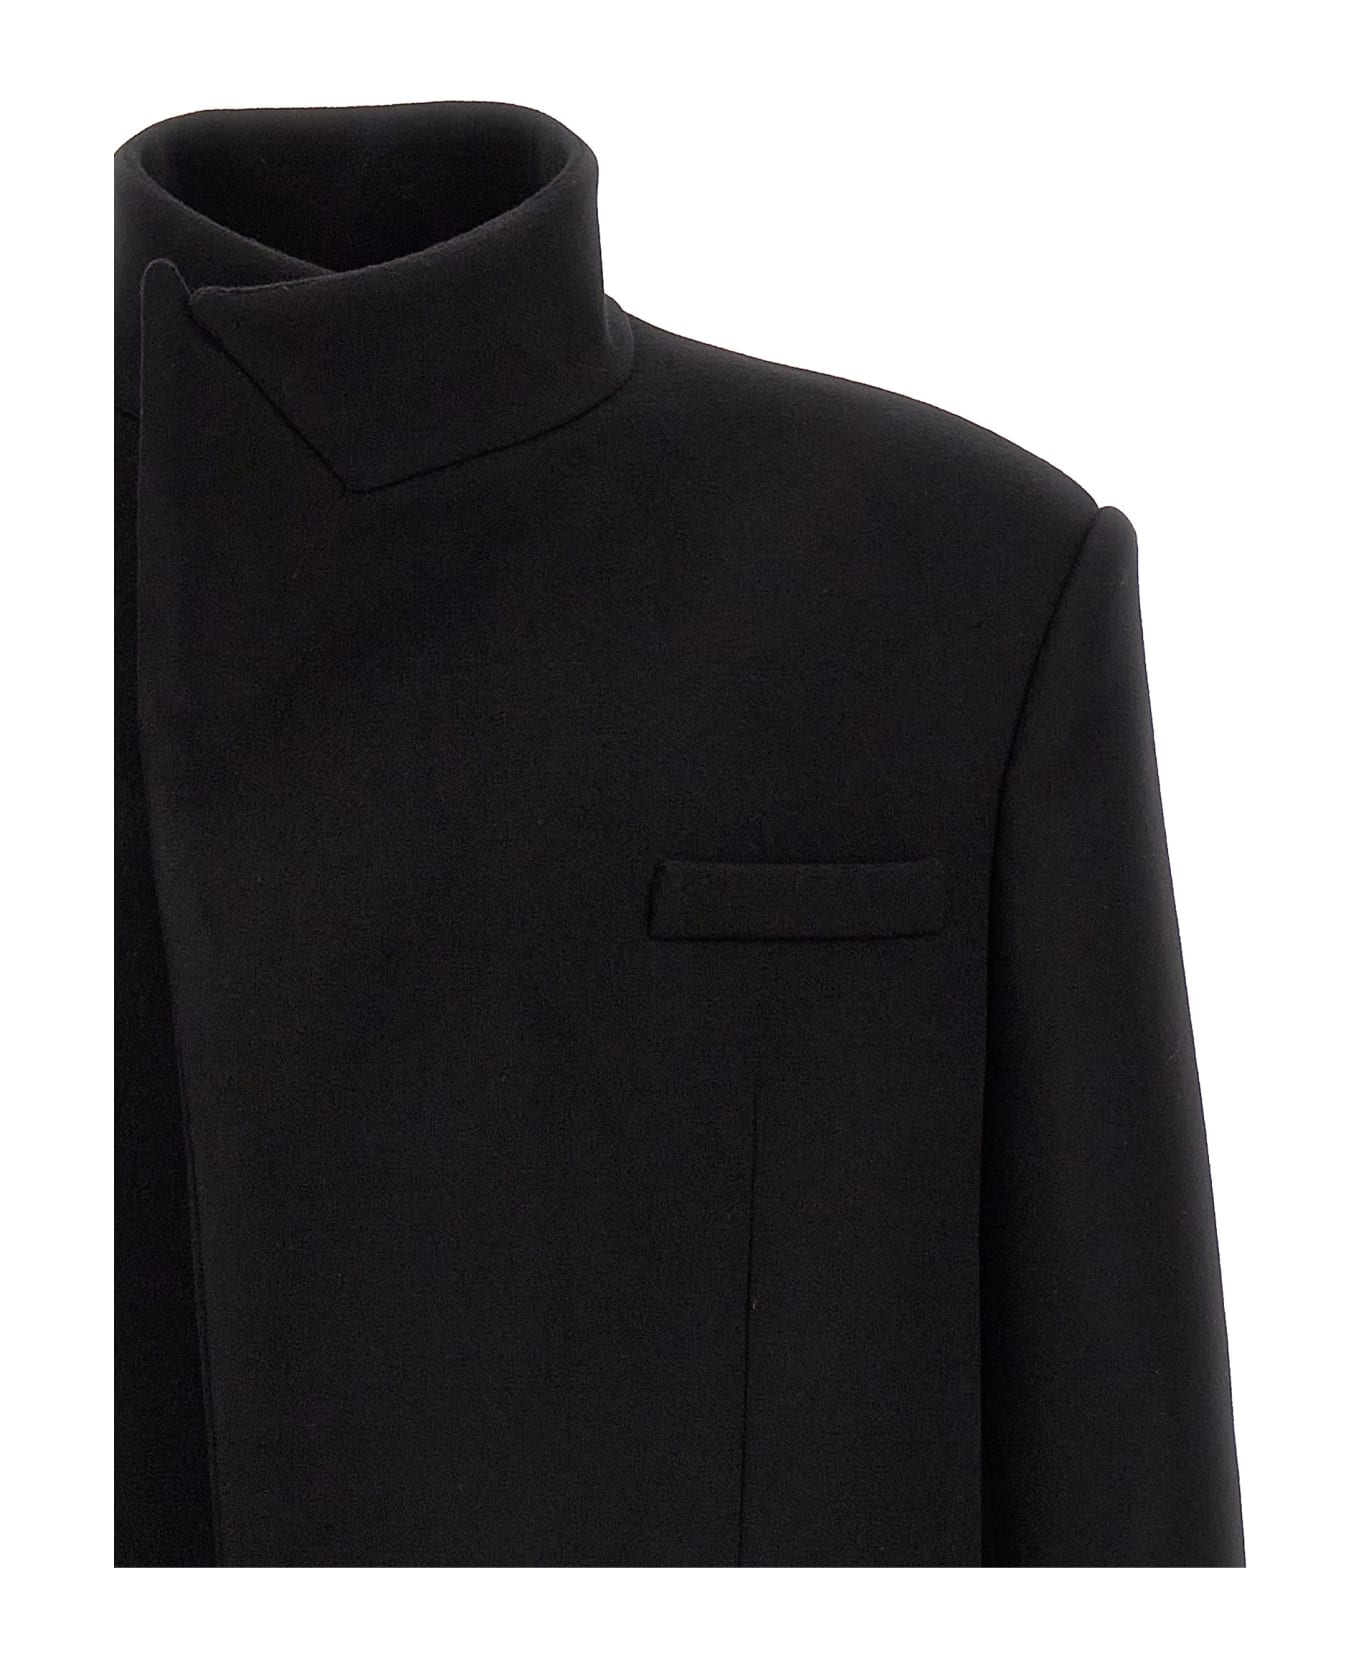 Balmain Single-breasted Long Coat - Black